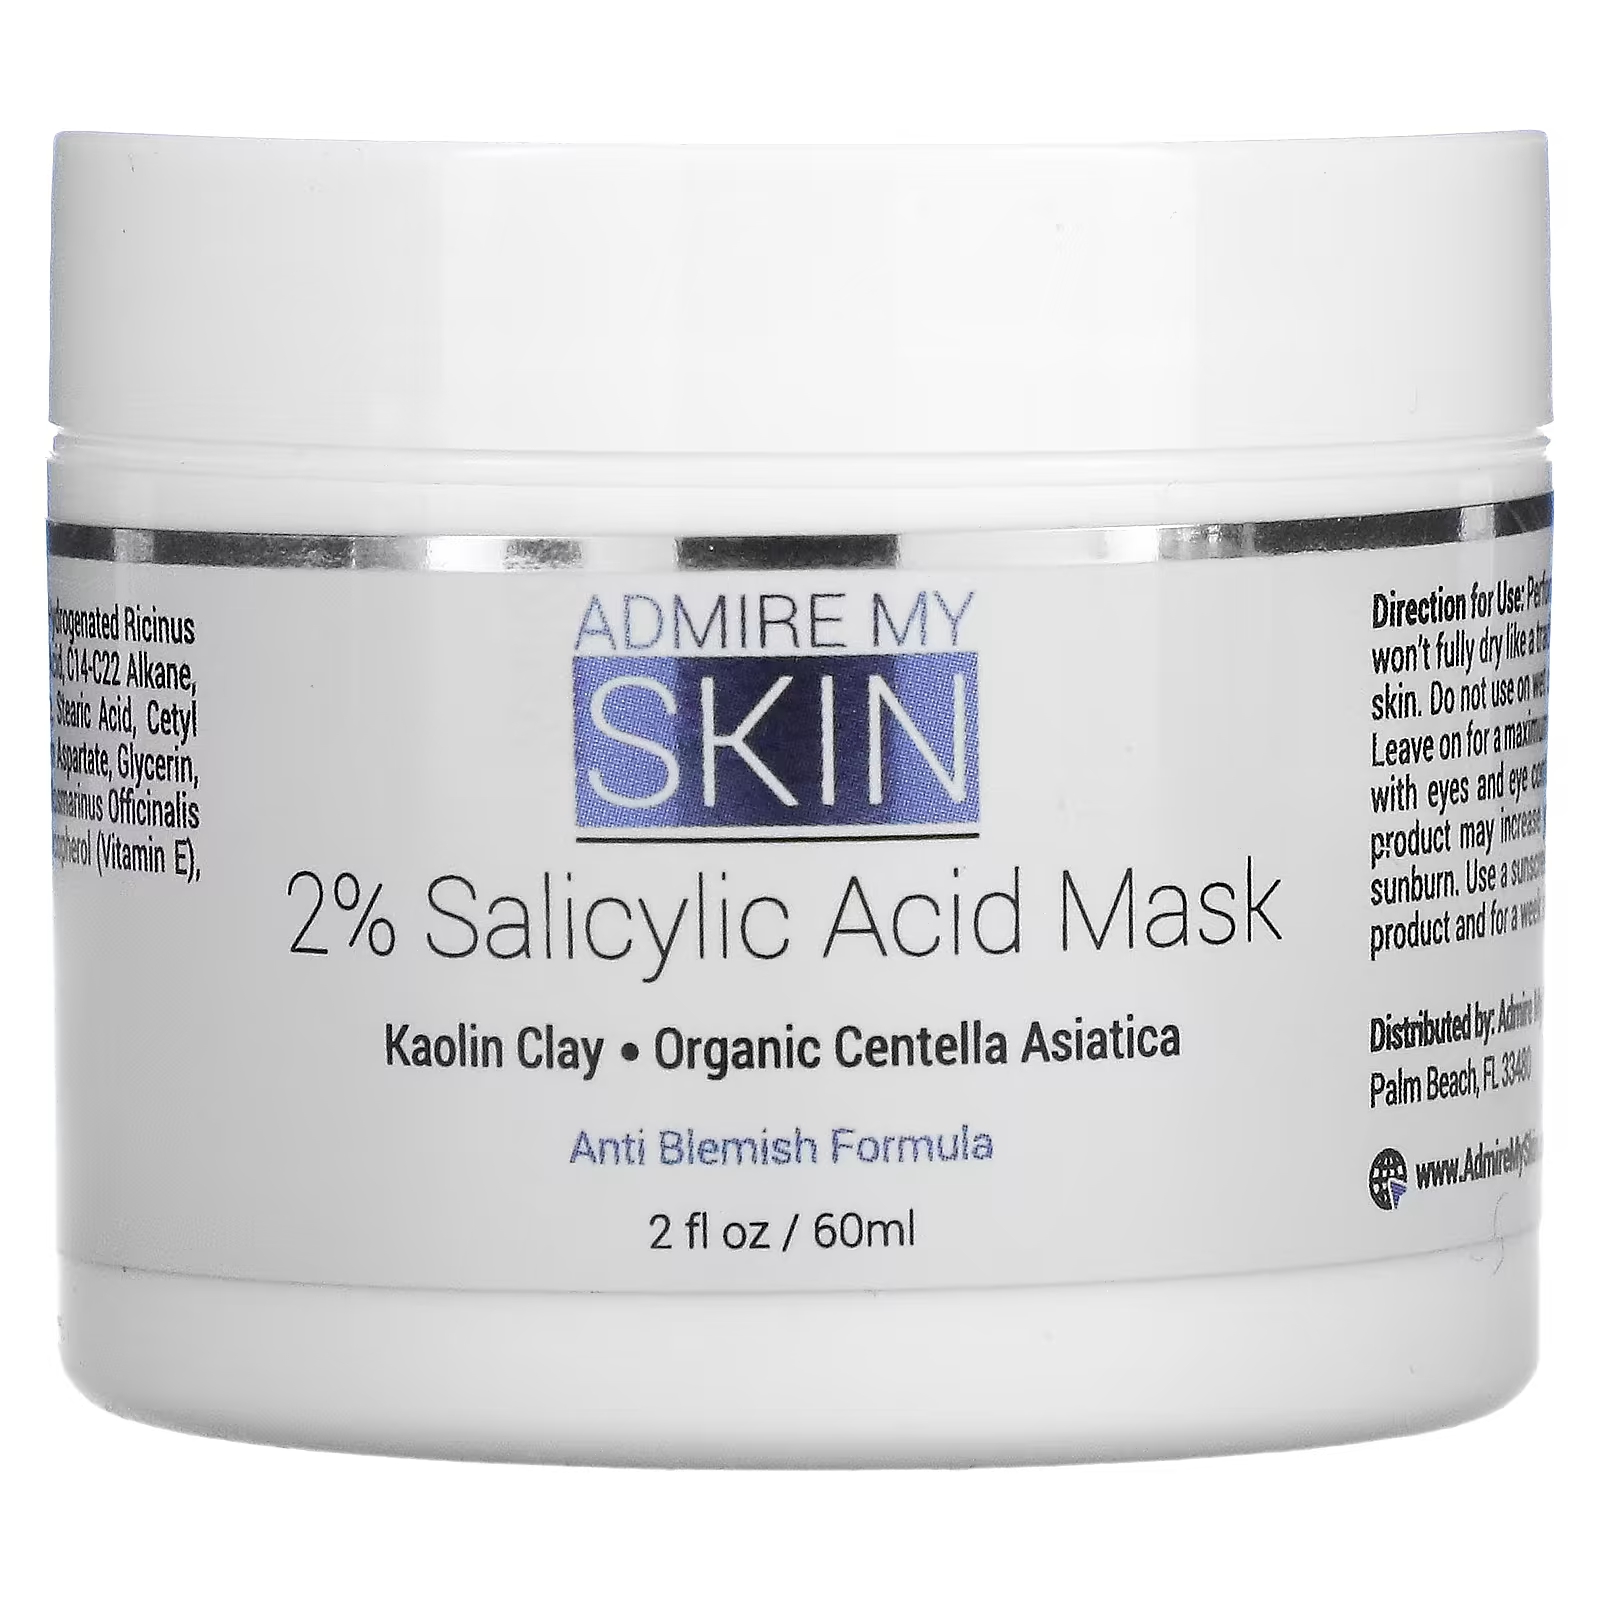 Косметическая маска Admire My Skin с 2% салициловой кислотой, 2 жидких унции (60 мл) красота маска admire my skin с витамином c glow 2 жидких унции 60 мл